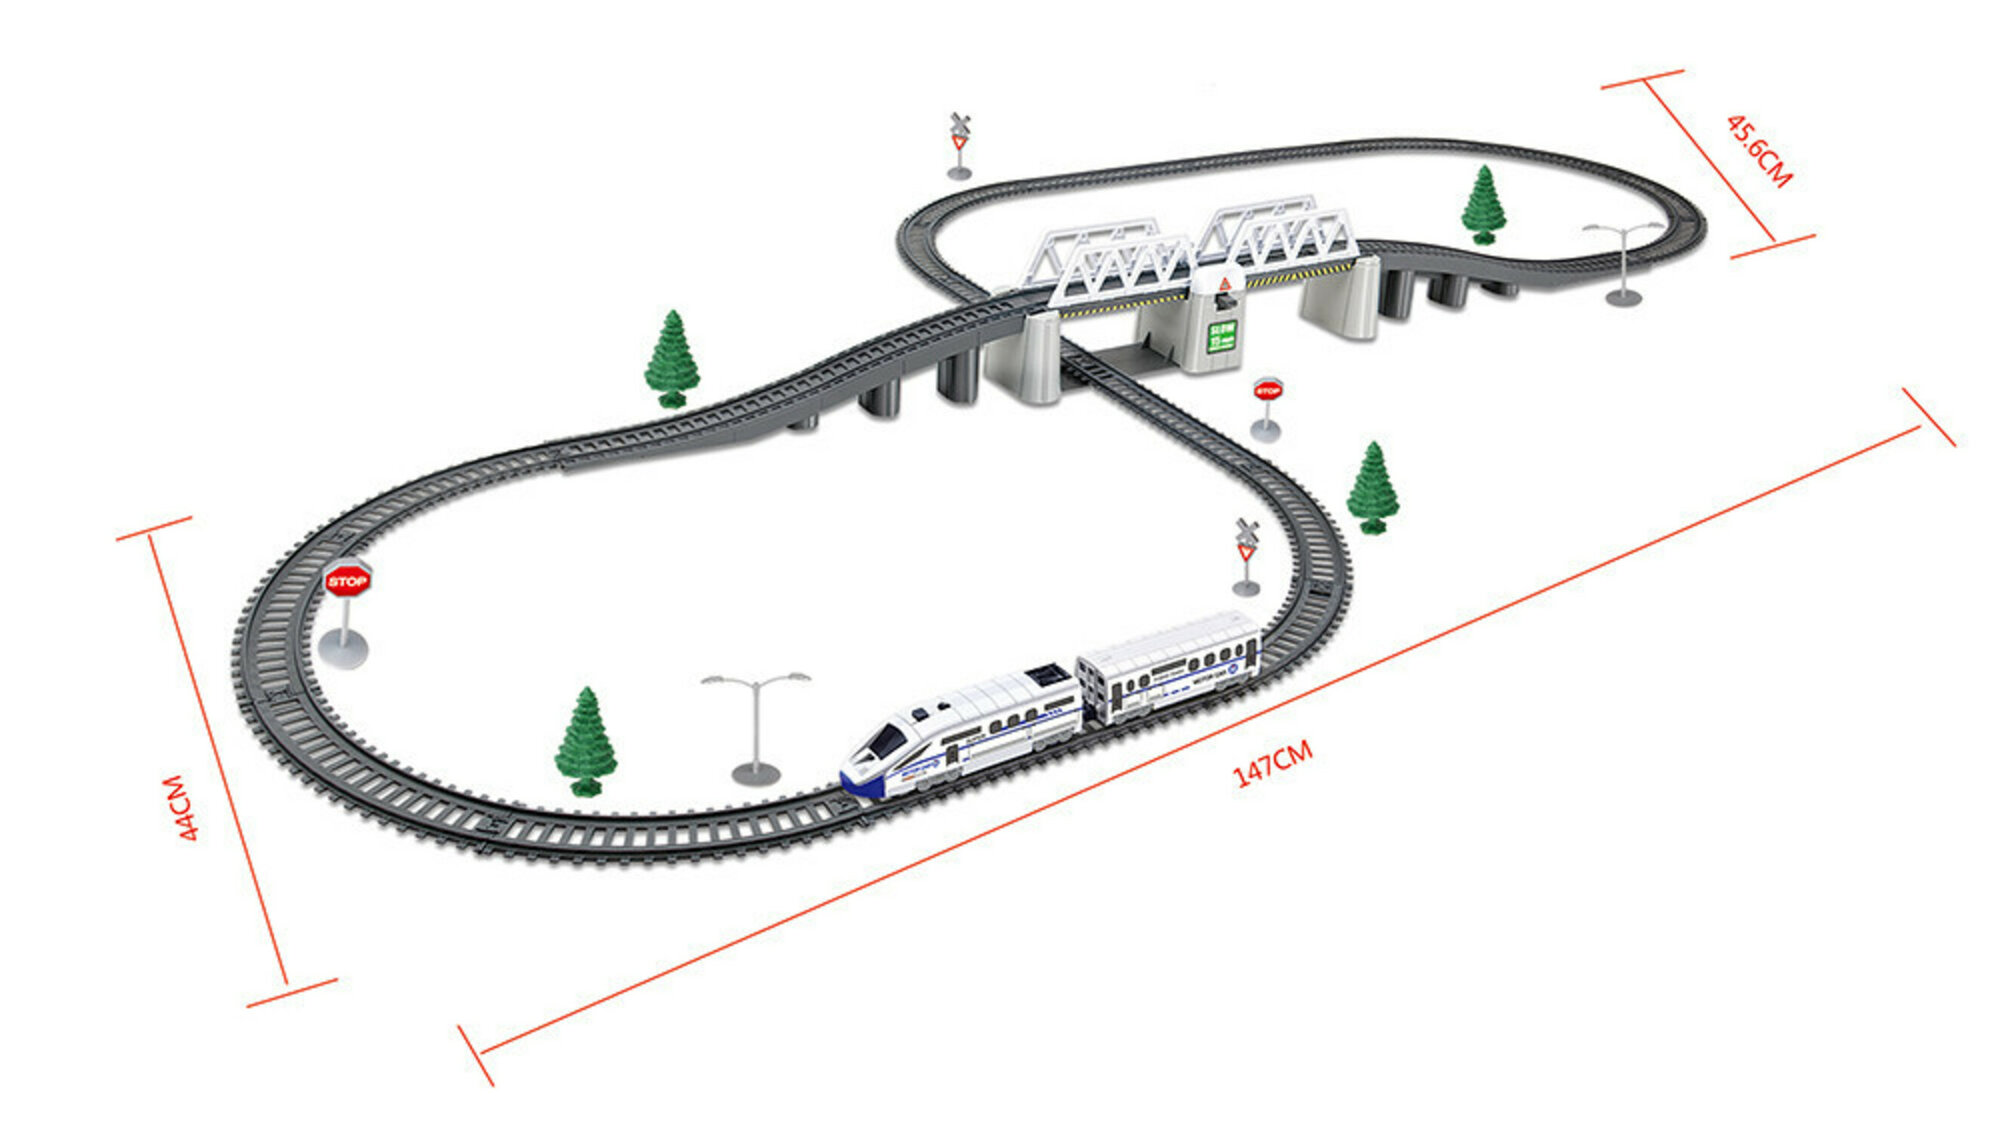 Железная дорога детская со скоростным электропоездом и мостом, 2 состава, 366 см длина трассы, с подсветкой - BSQ-2184